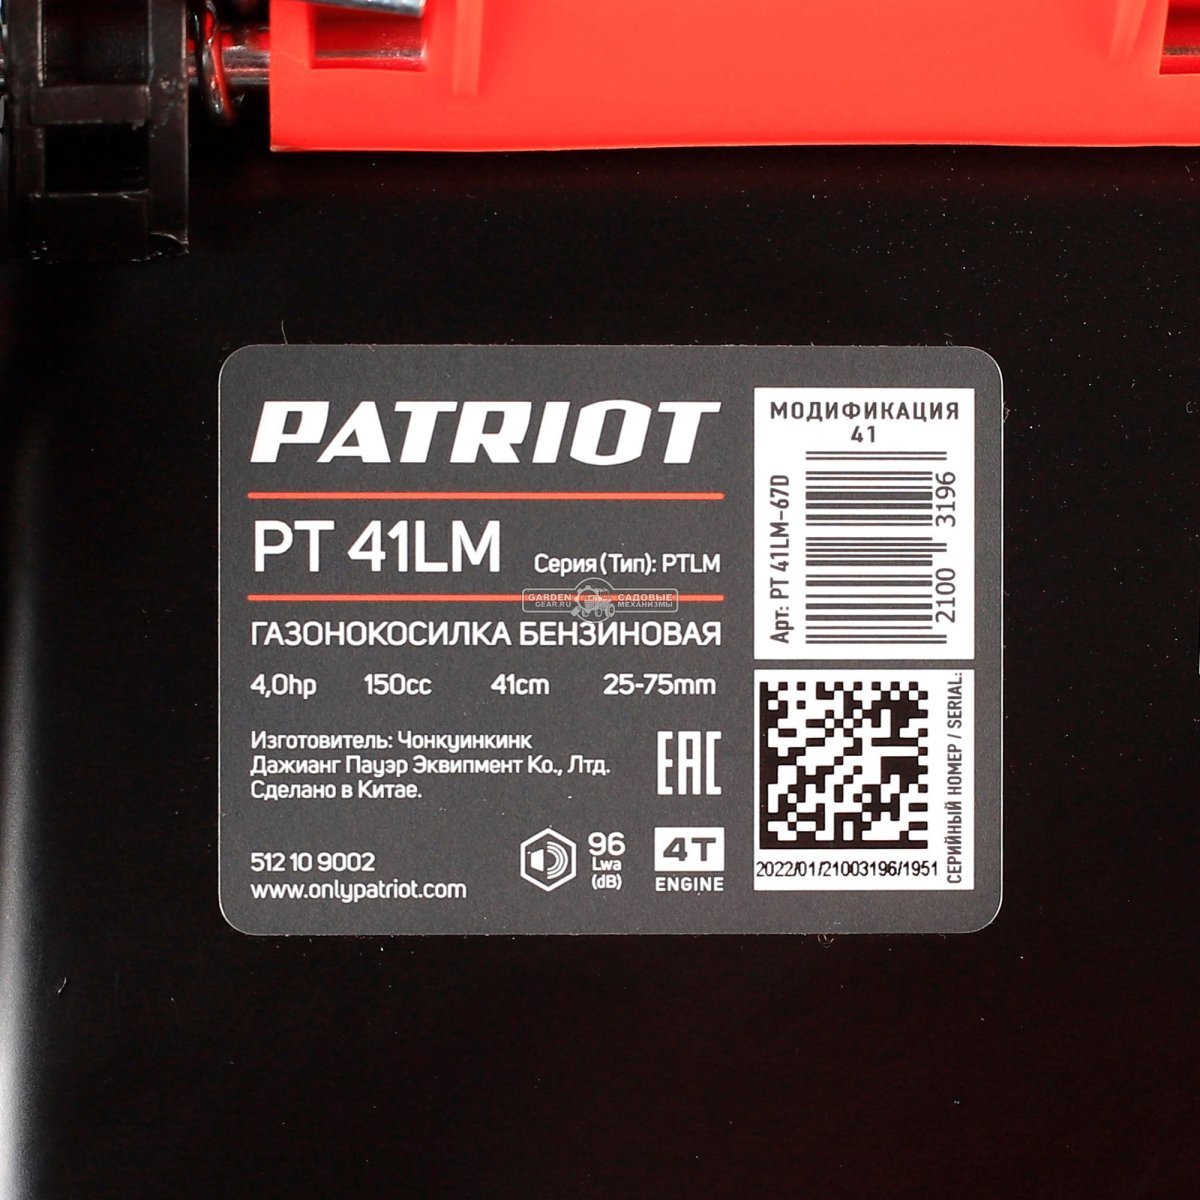 Газонокосилка бензиновая несамоходная Patriot PT 41 LM (PRC, 150 см3, Patriot, 41 см, сталь, 40 л, 20 кг)